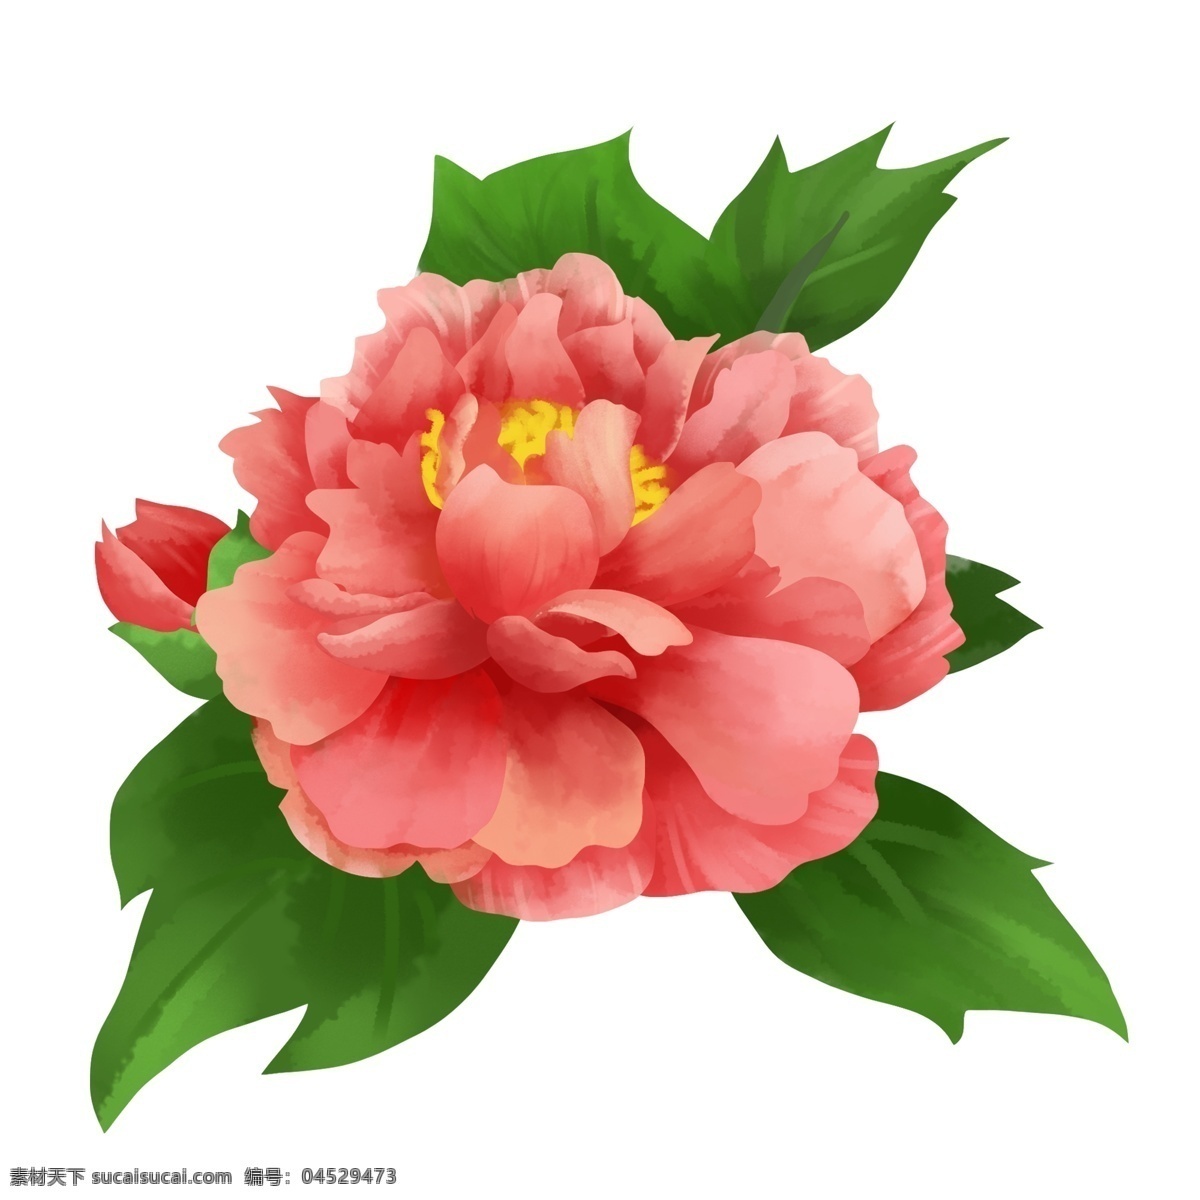 唯美 喜庆 粉红色 牡丹 手绘 水彩 风 商用 元素 植物 花朵 清新 古典 粉红 富贵